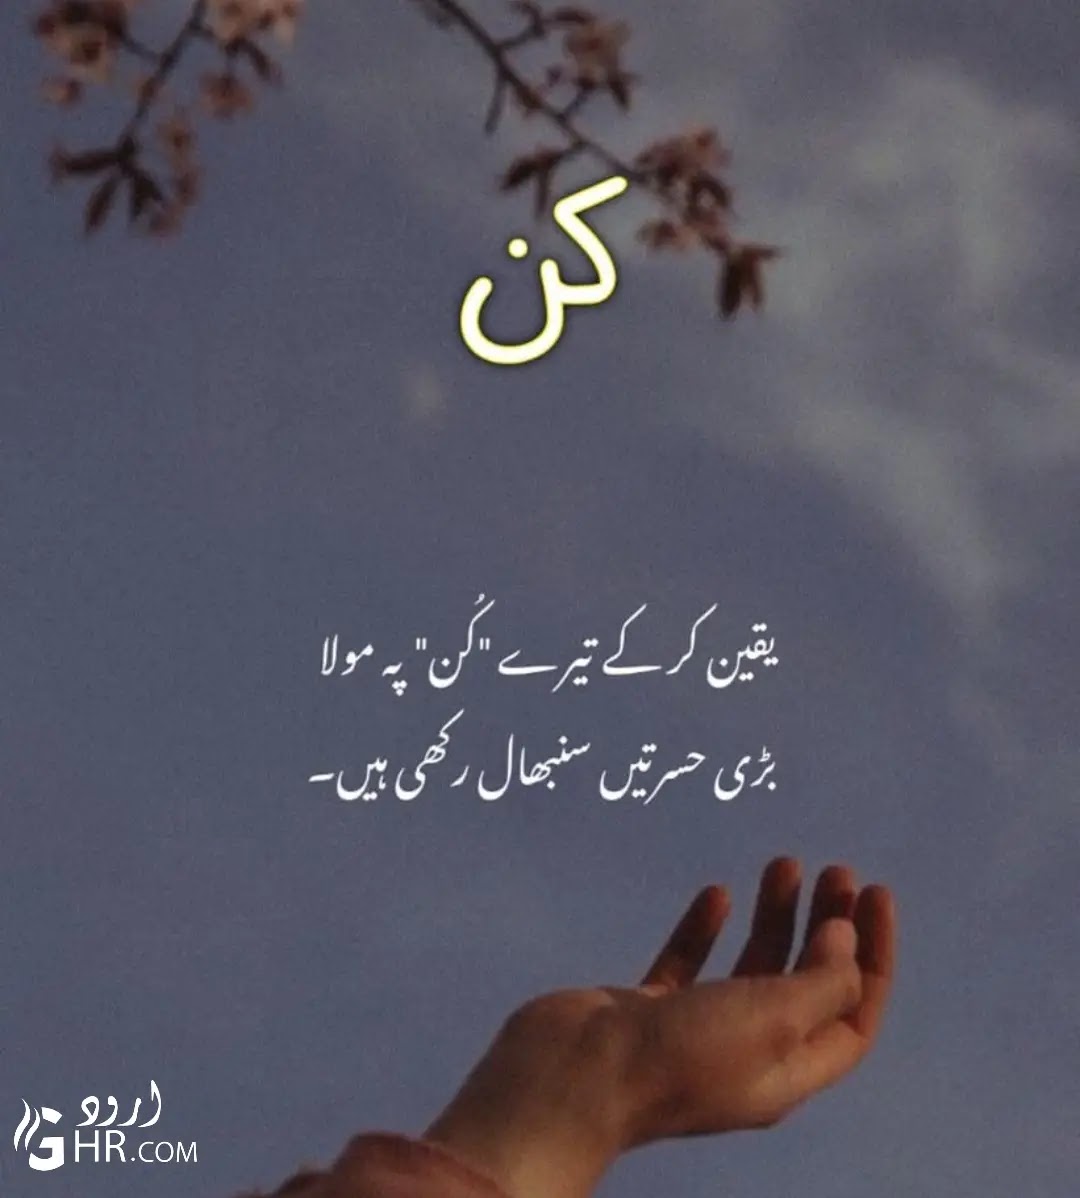 Best Islamic Quotes In Urdu Allah Quotes